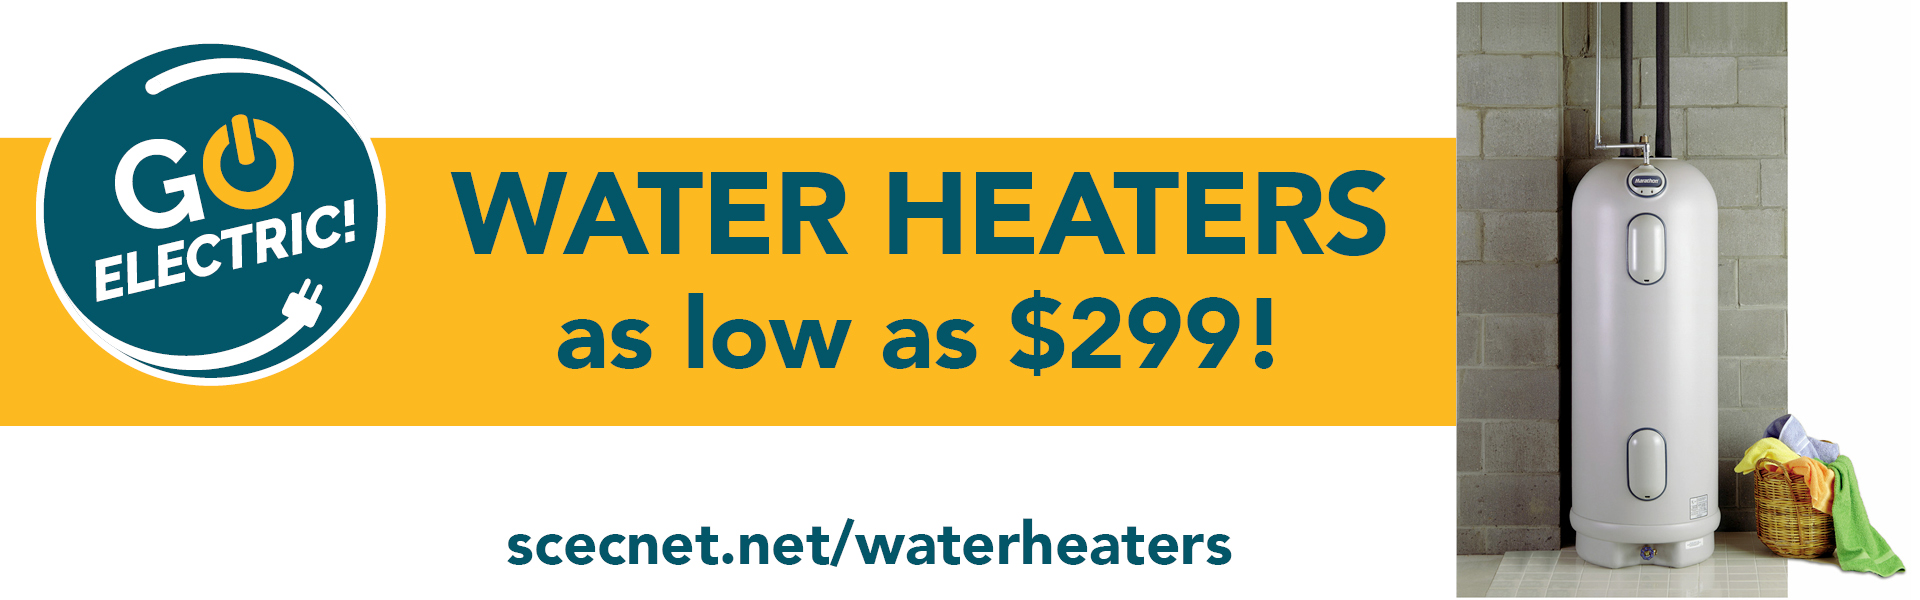 Water Heaters as low as $299